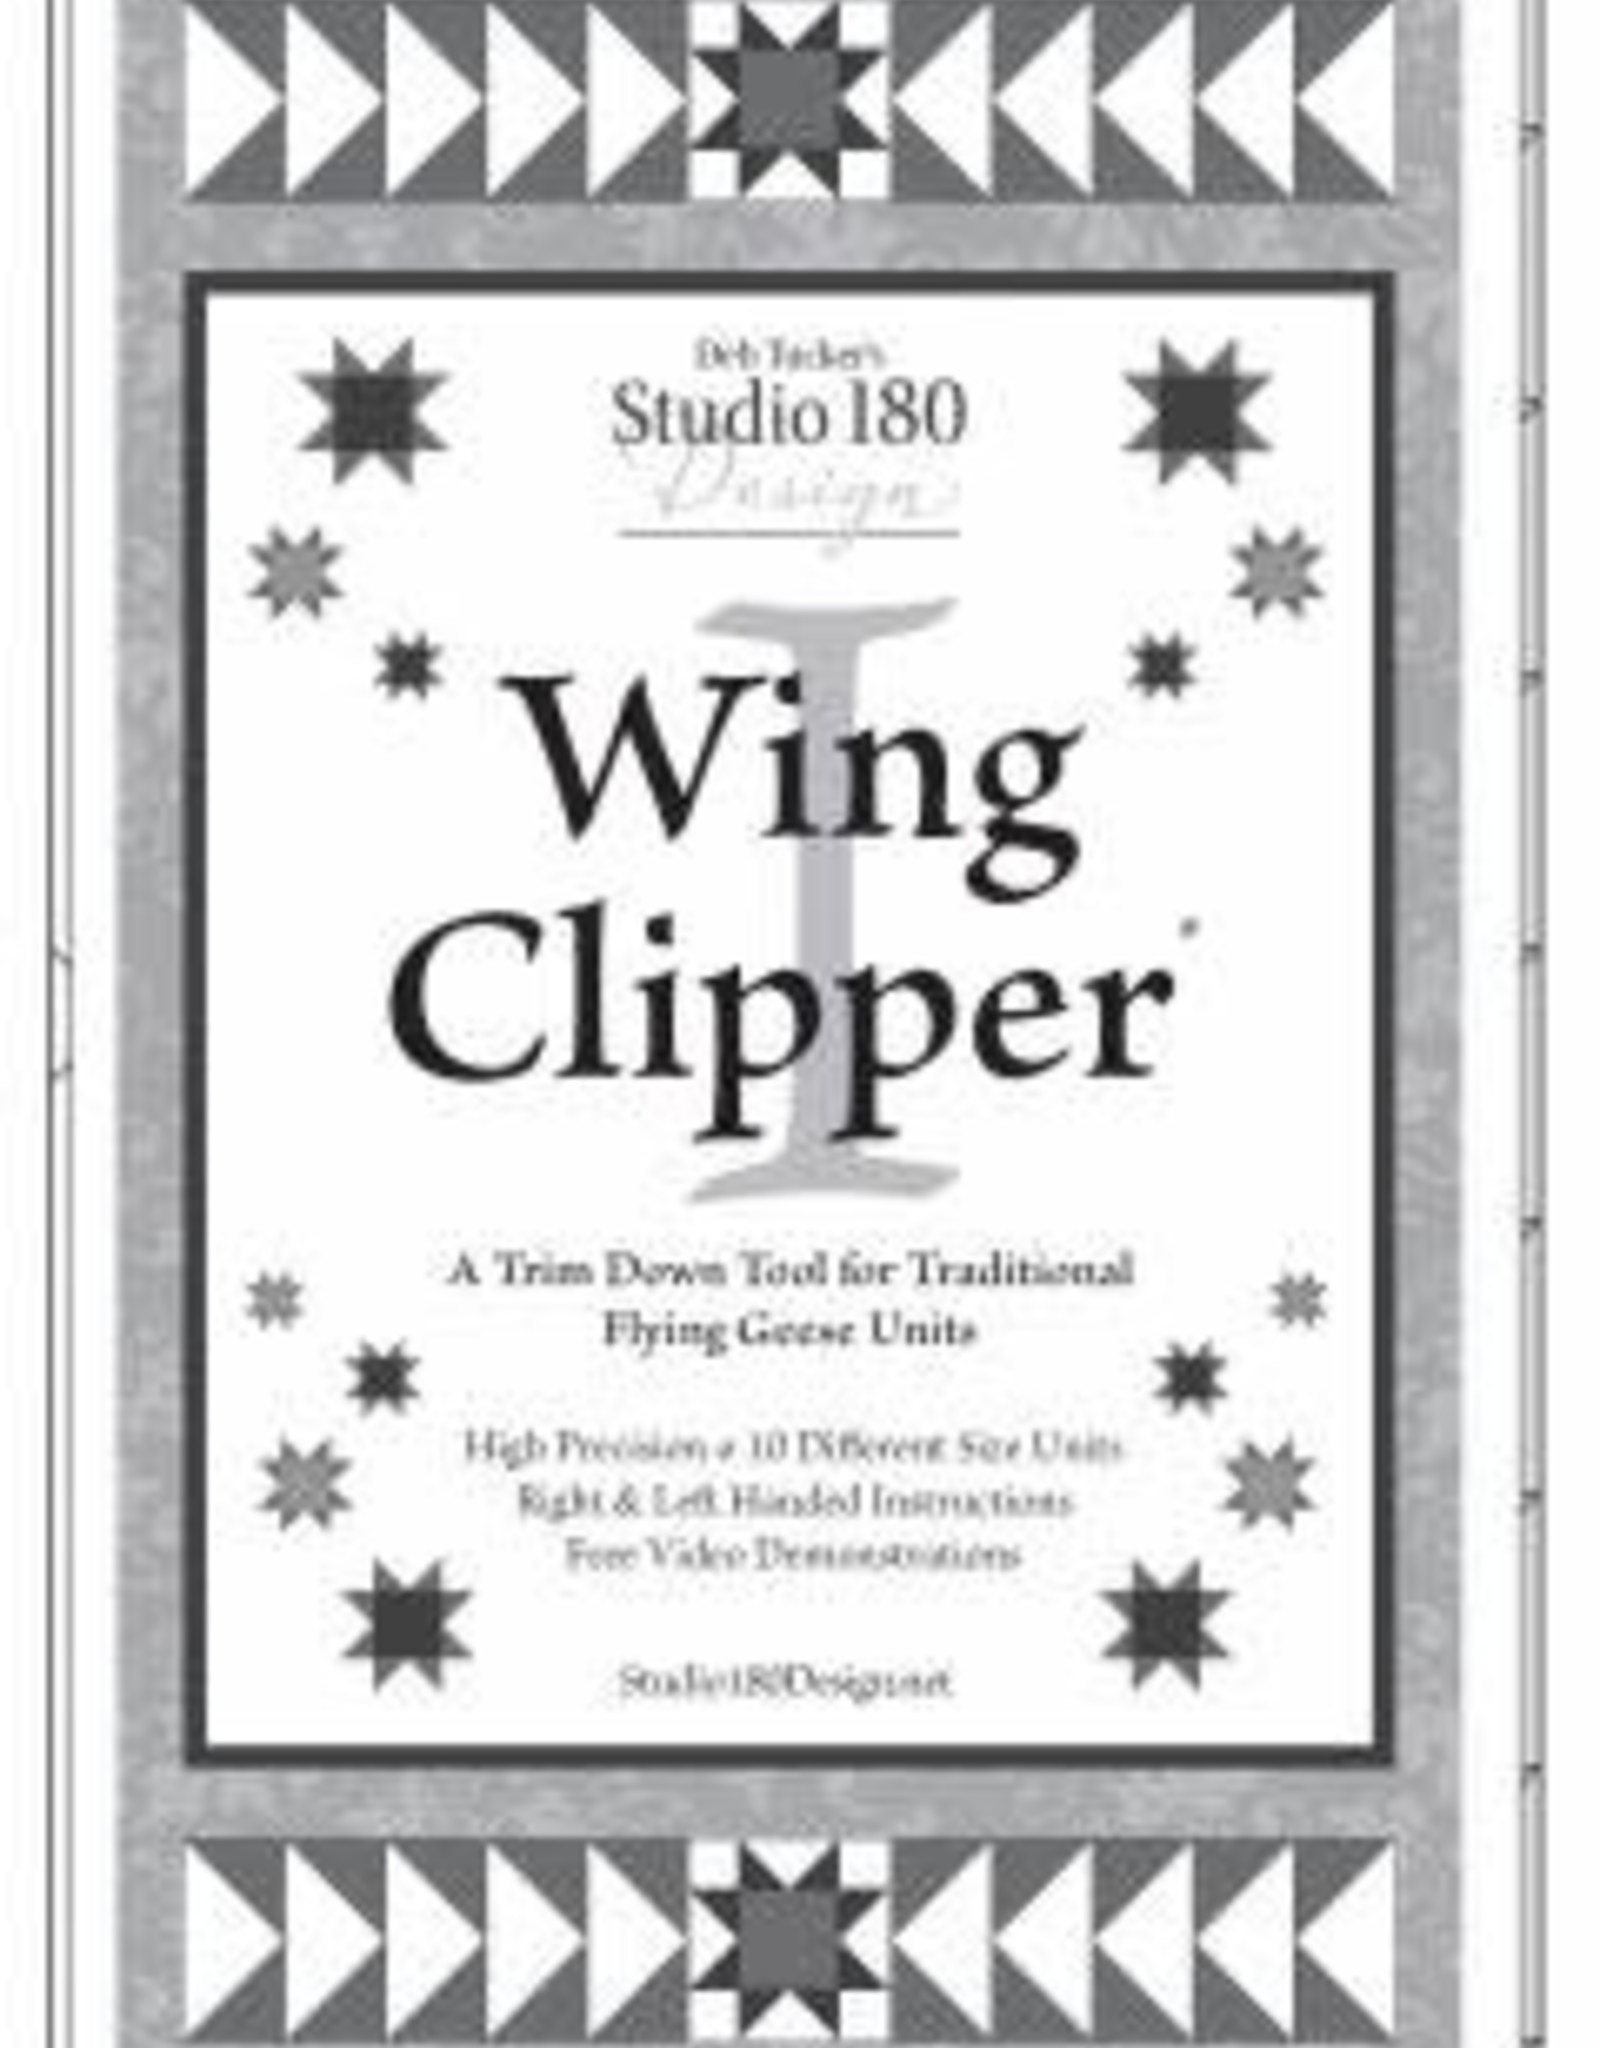 Studio 180 Design Wing Clipper 1